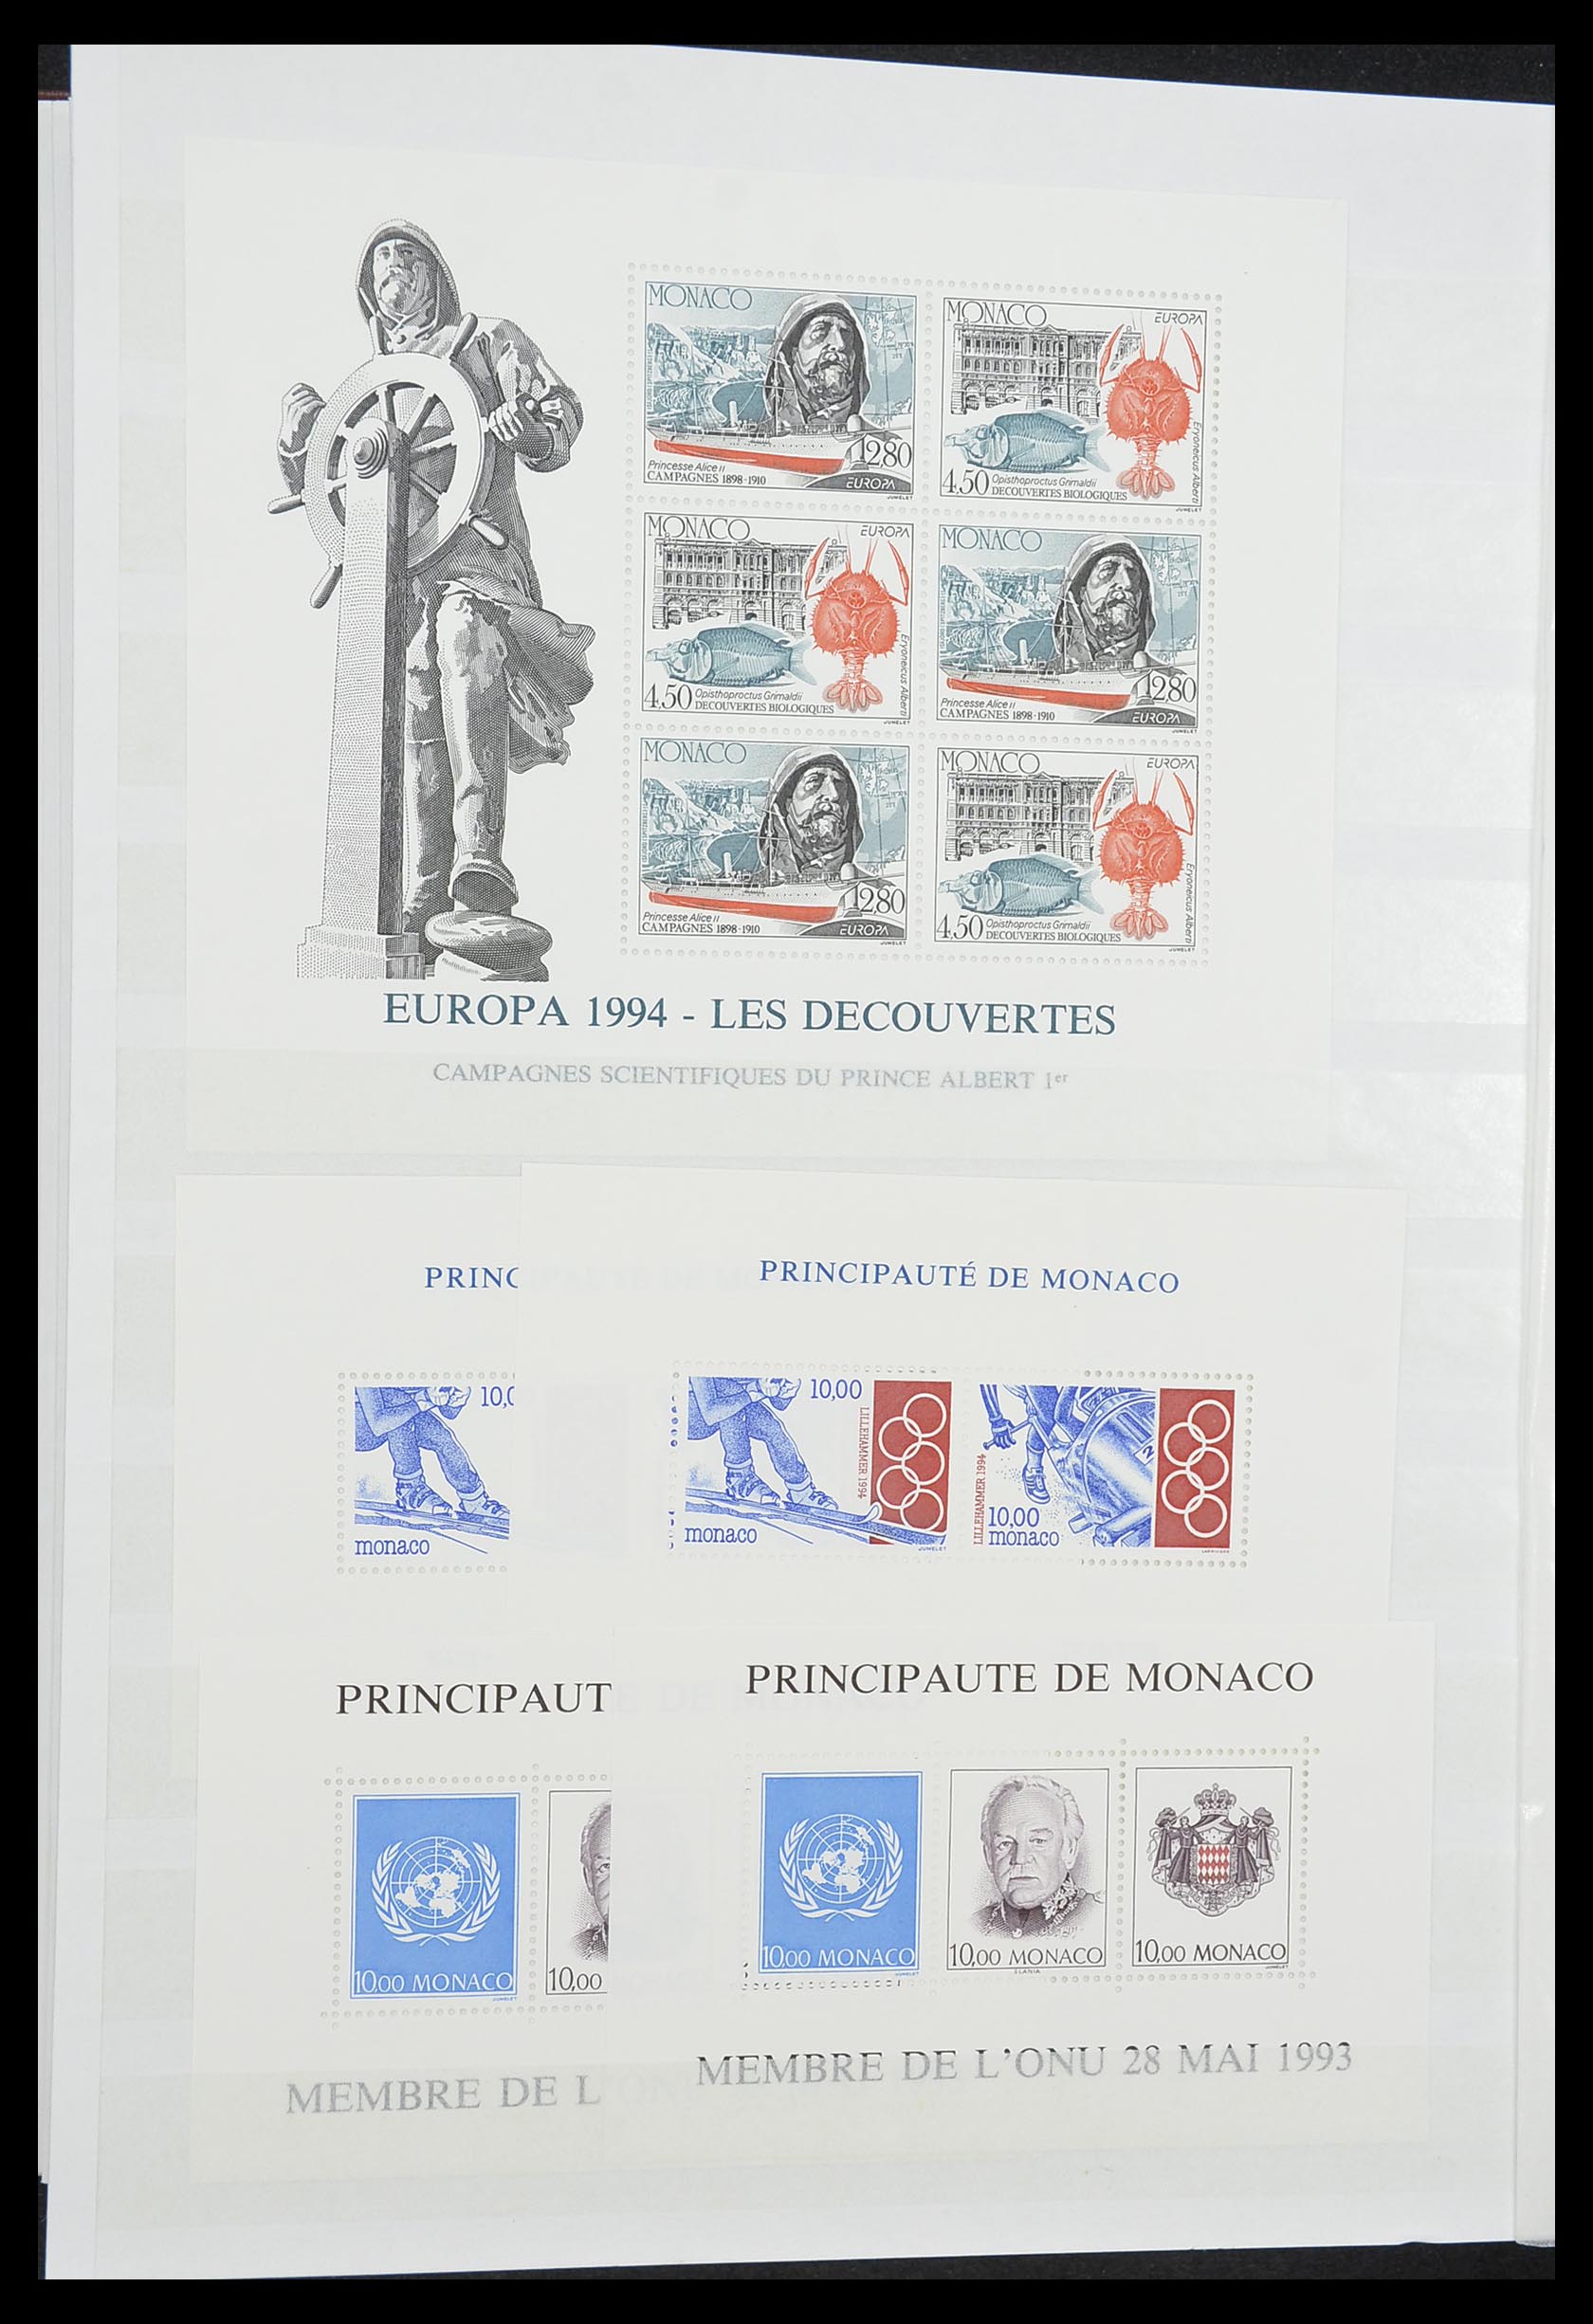 33833 030 - Stamp collection 33833 Monaco souvenir sheets 1979-2015.